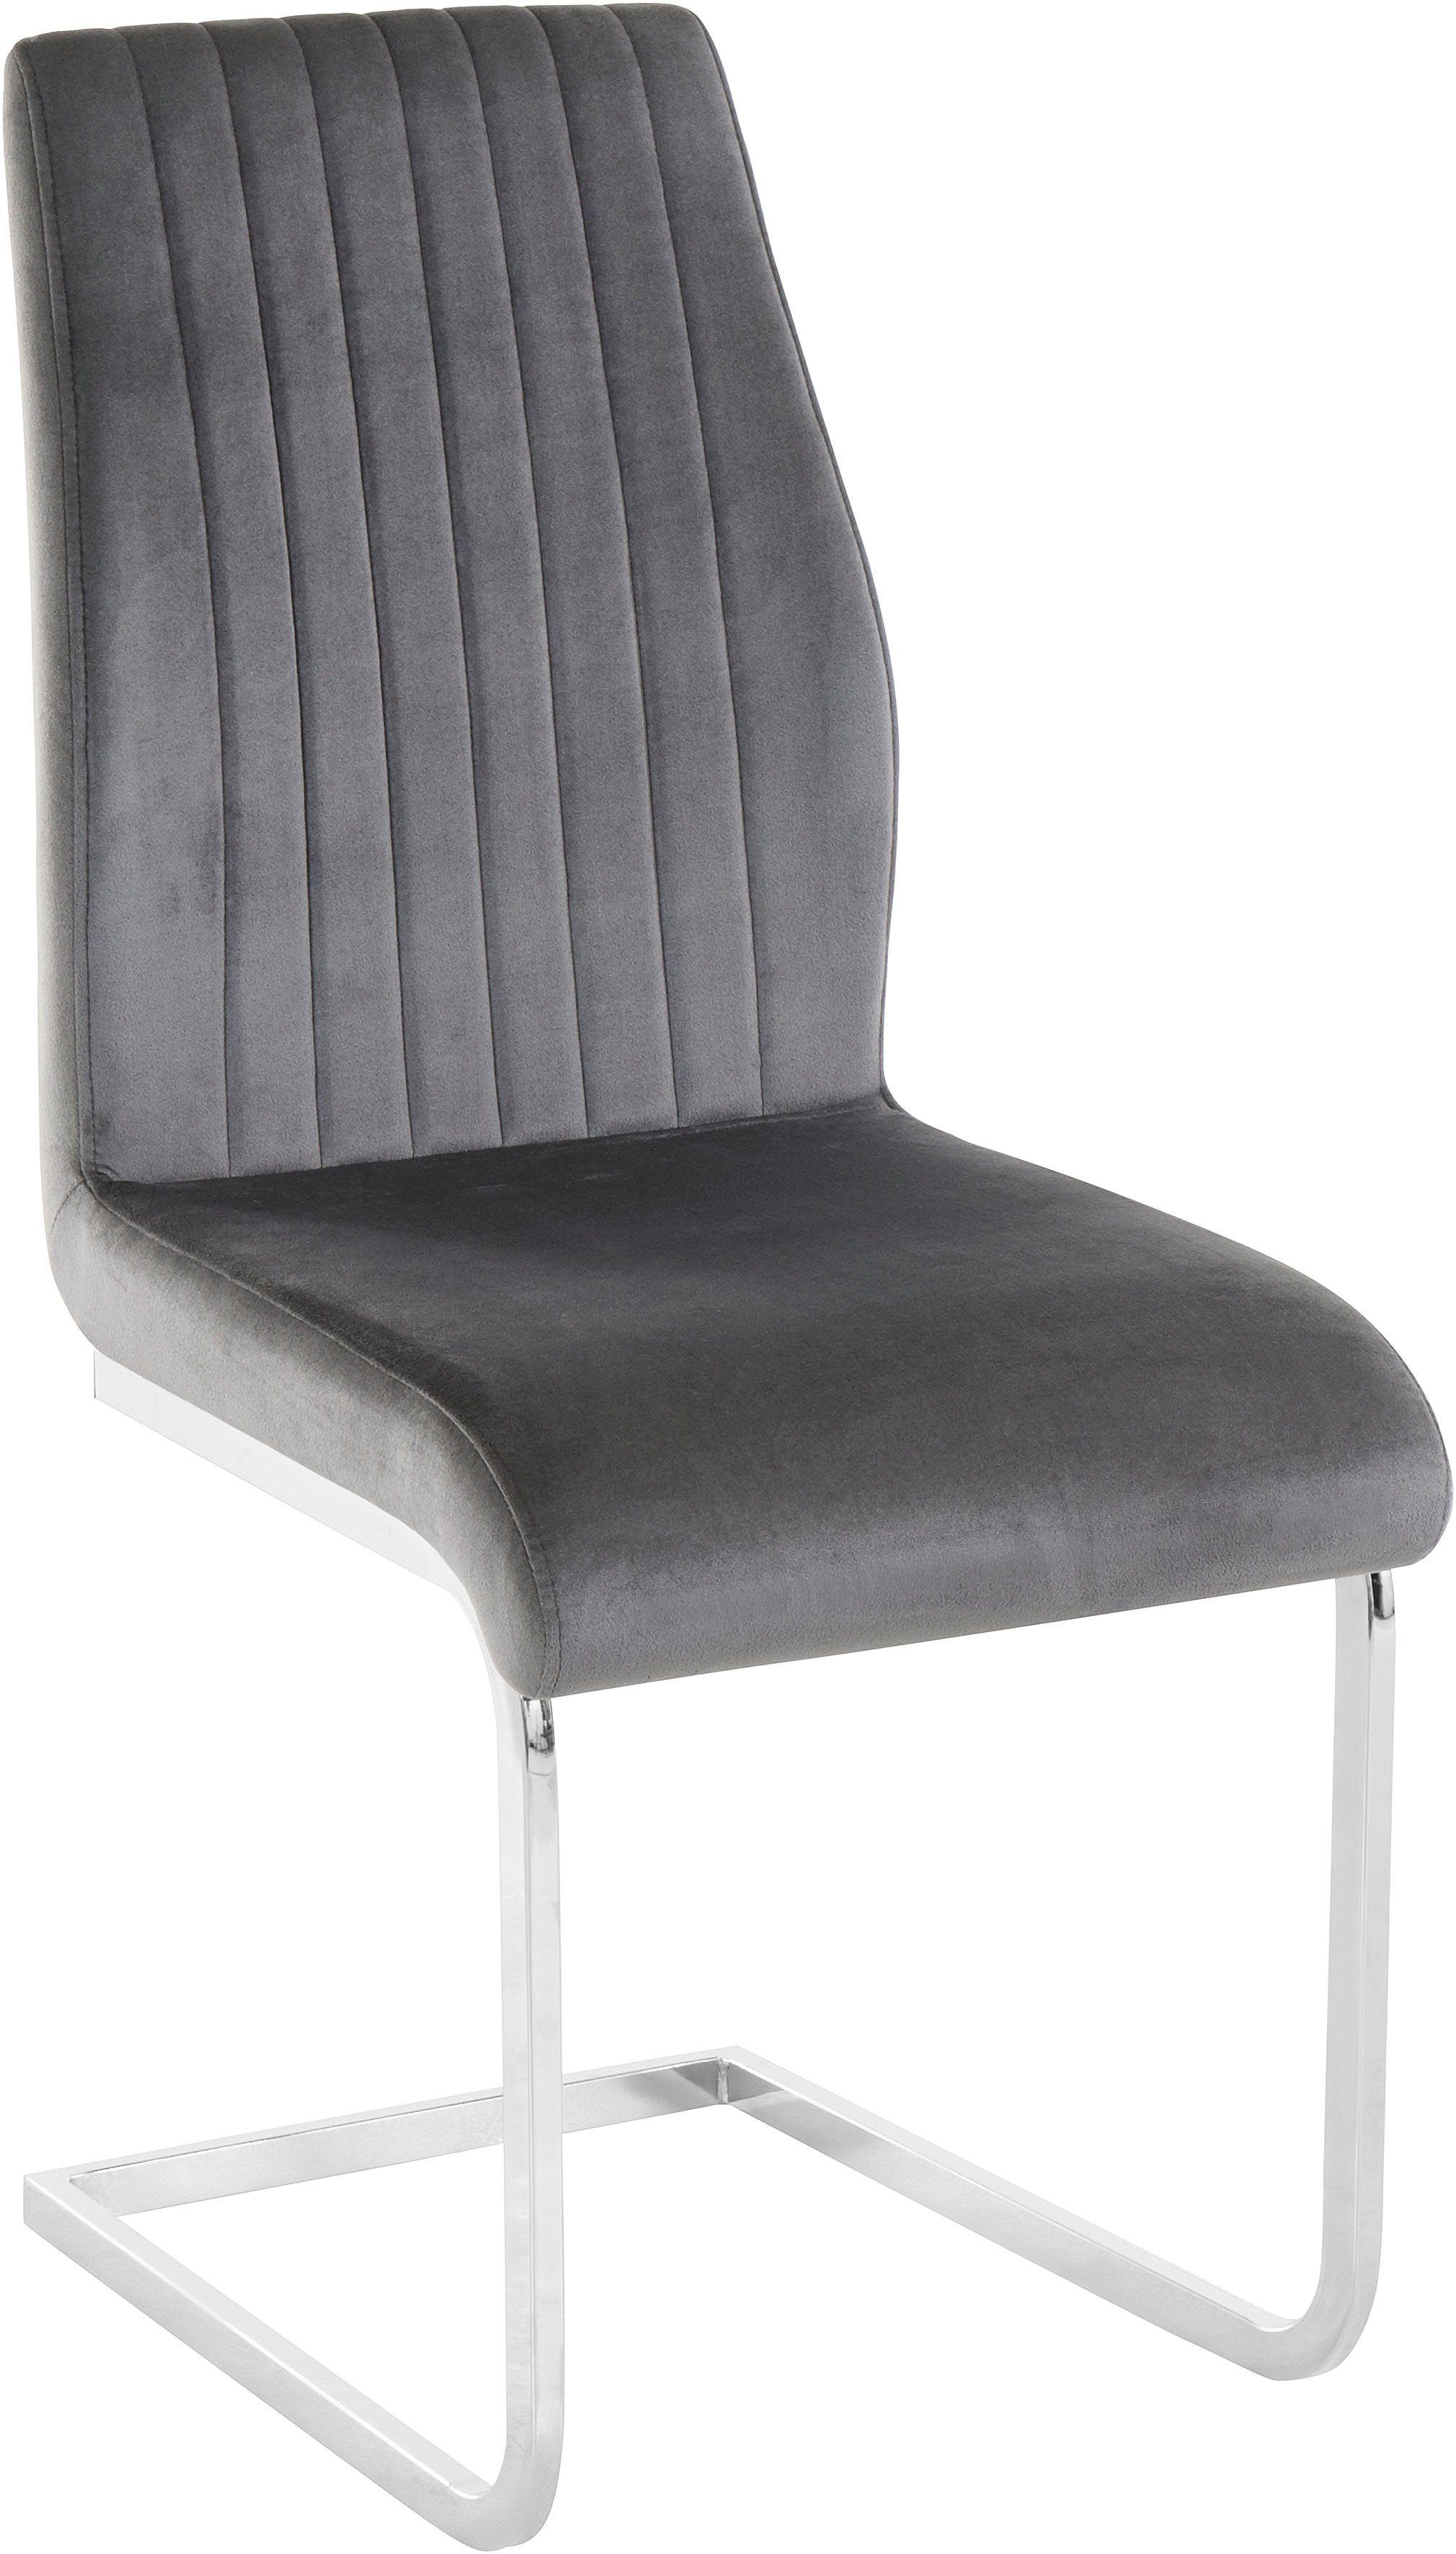 Leonique Esszimmerstuhl Mikael (2 St), mit Sitz in Veloursstoff und vertikale Nähten am Rücken, Sitzhöhe 50cm grau/chrom | grau | Stühle